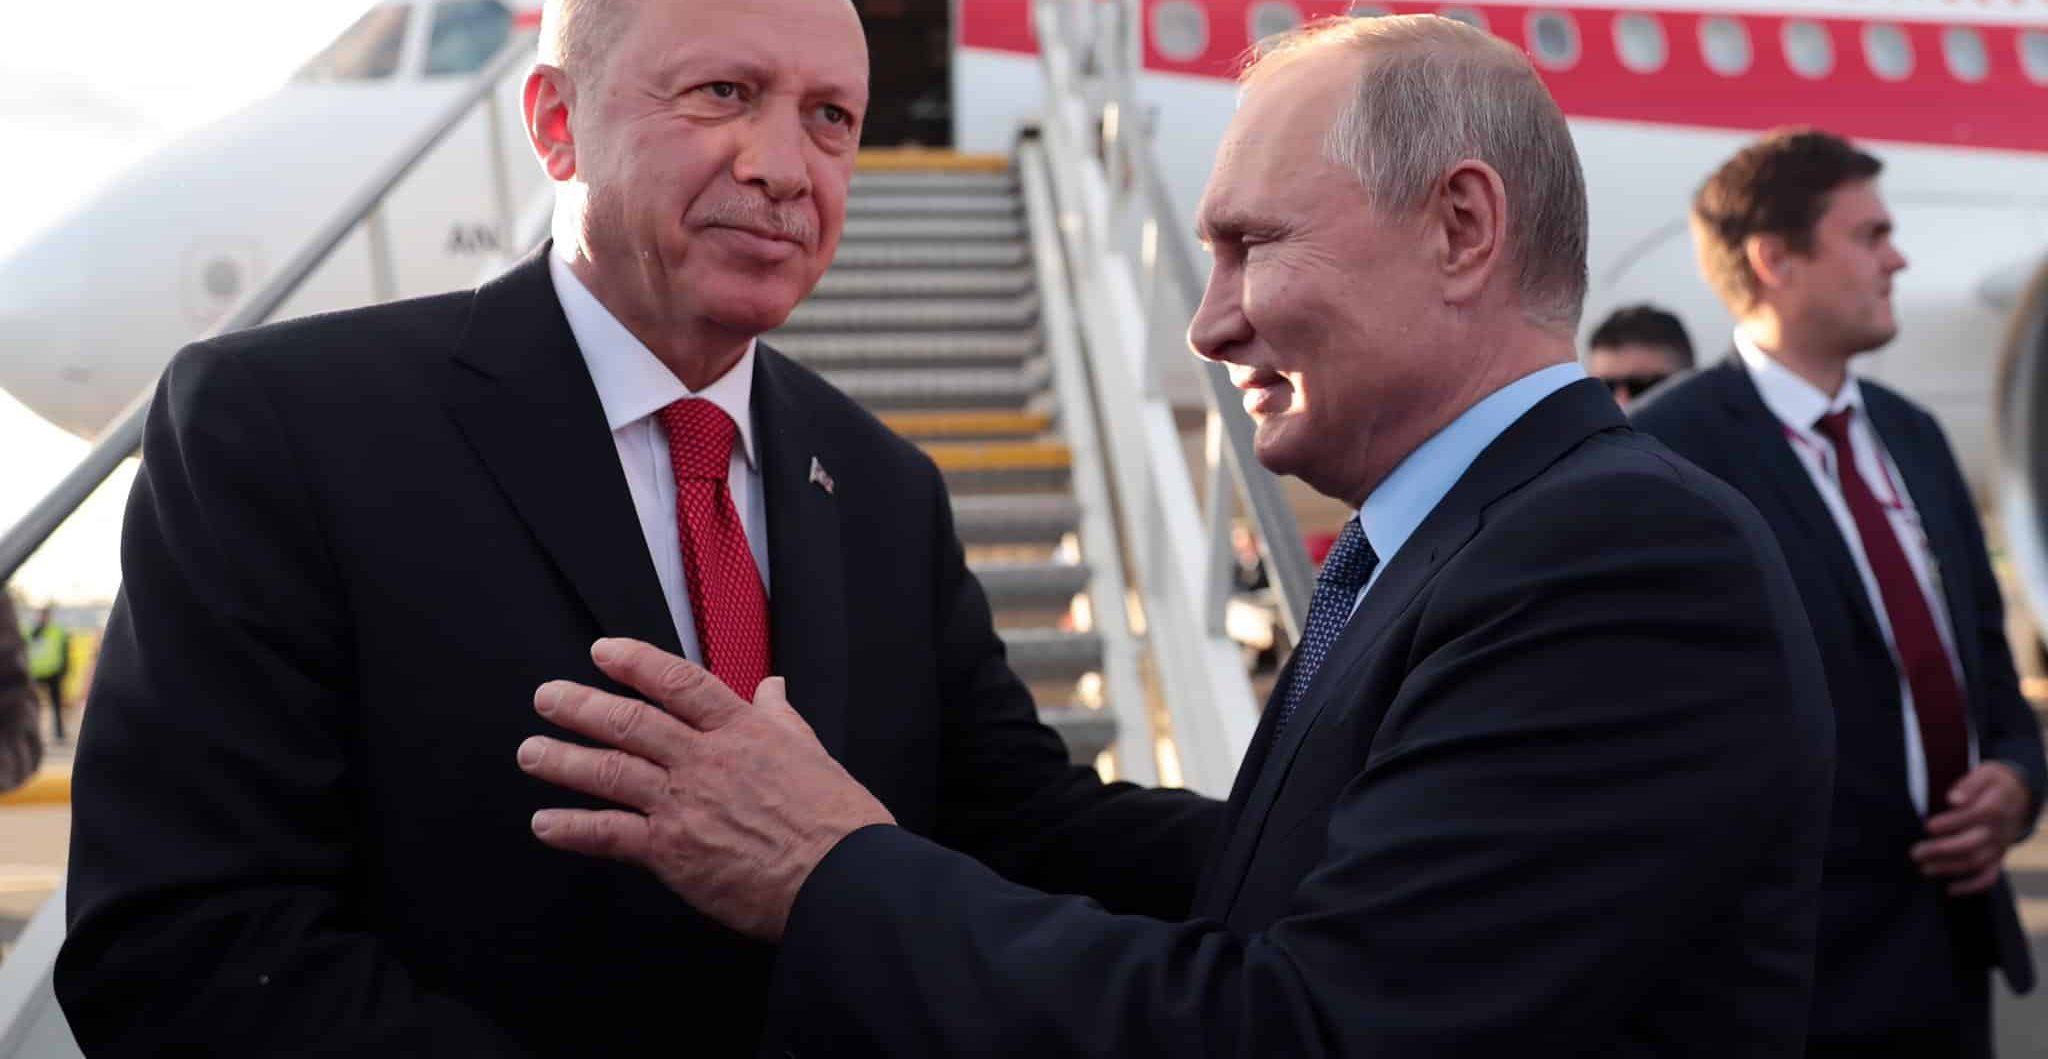 Mosca conferma. Ad Astana Putin vedrà Erdoğan